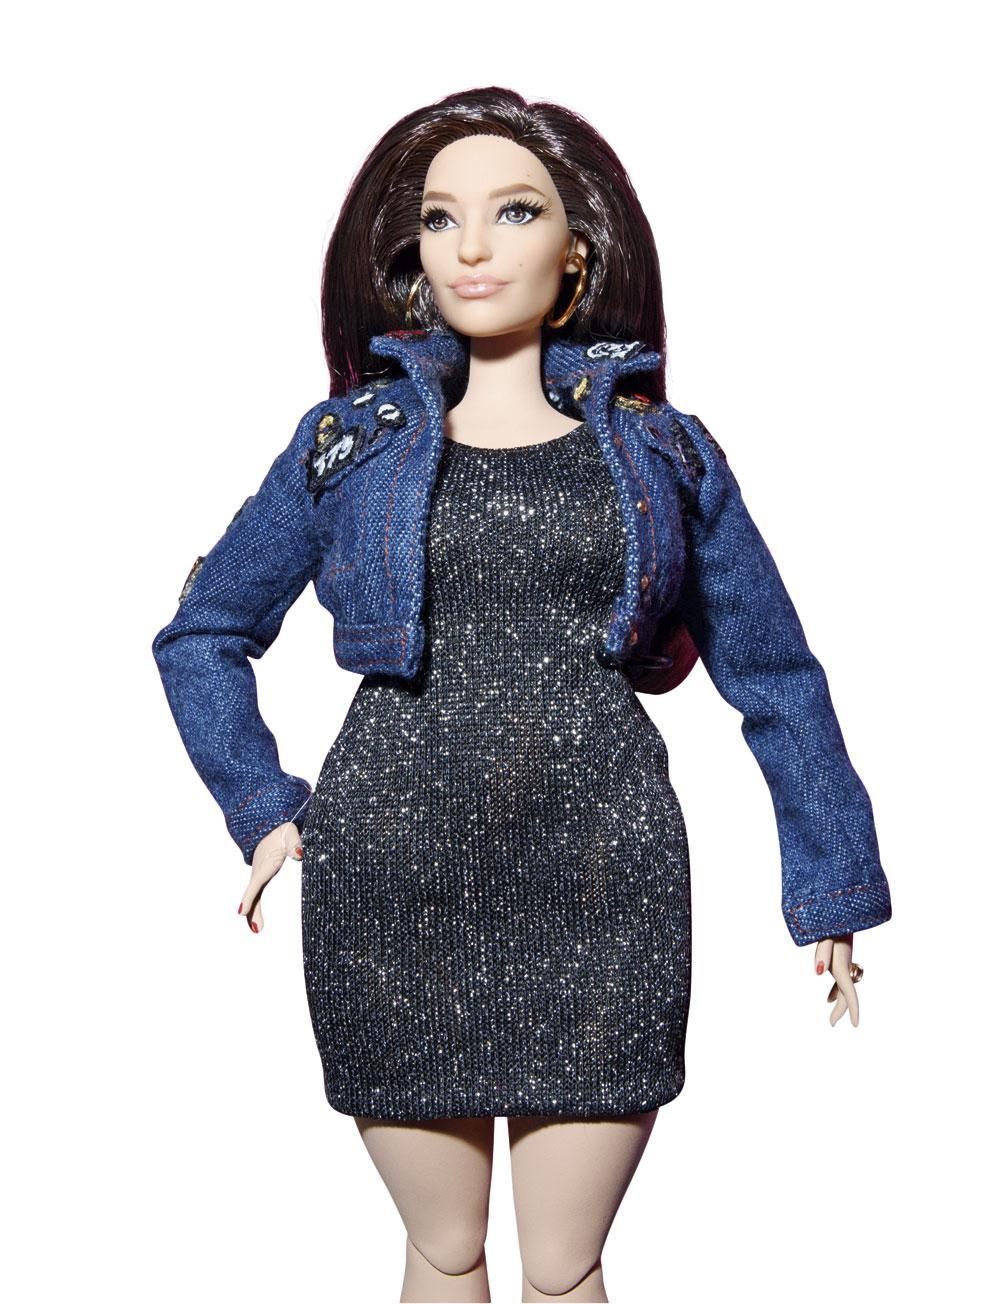 Eerste realistische Barbie, 2016.